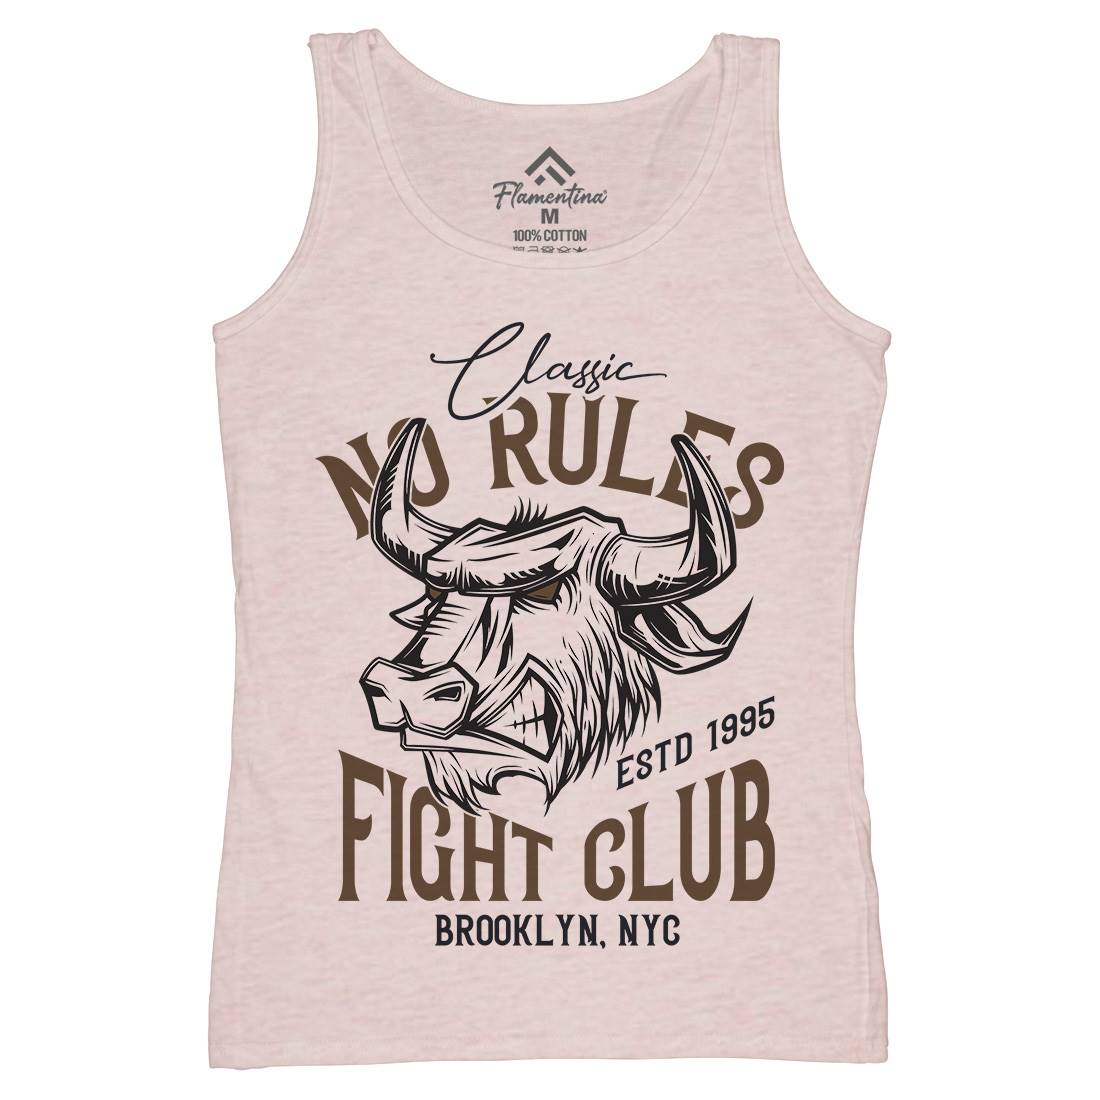 Bull Fight Club Womens Organic Tank Top Vest Animals B799